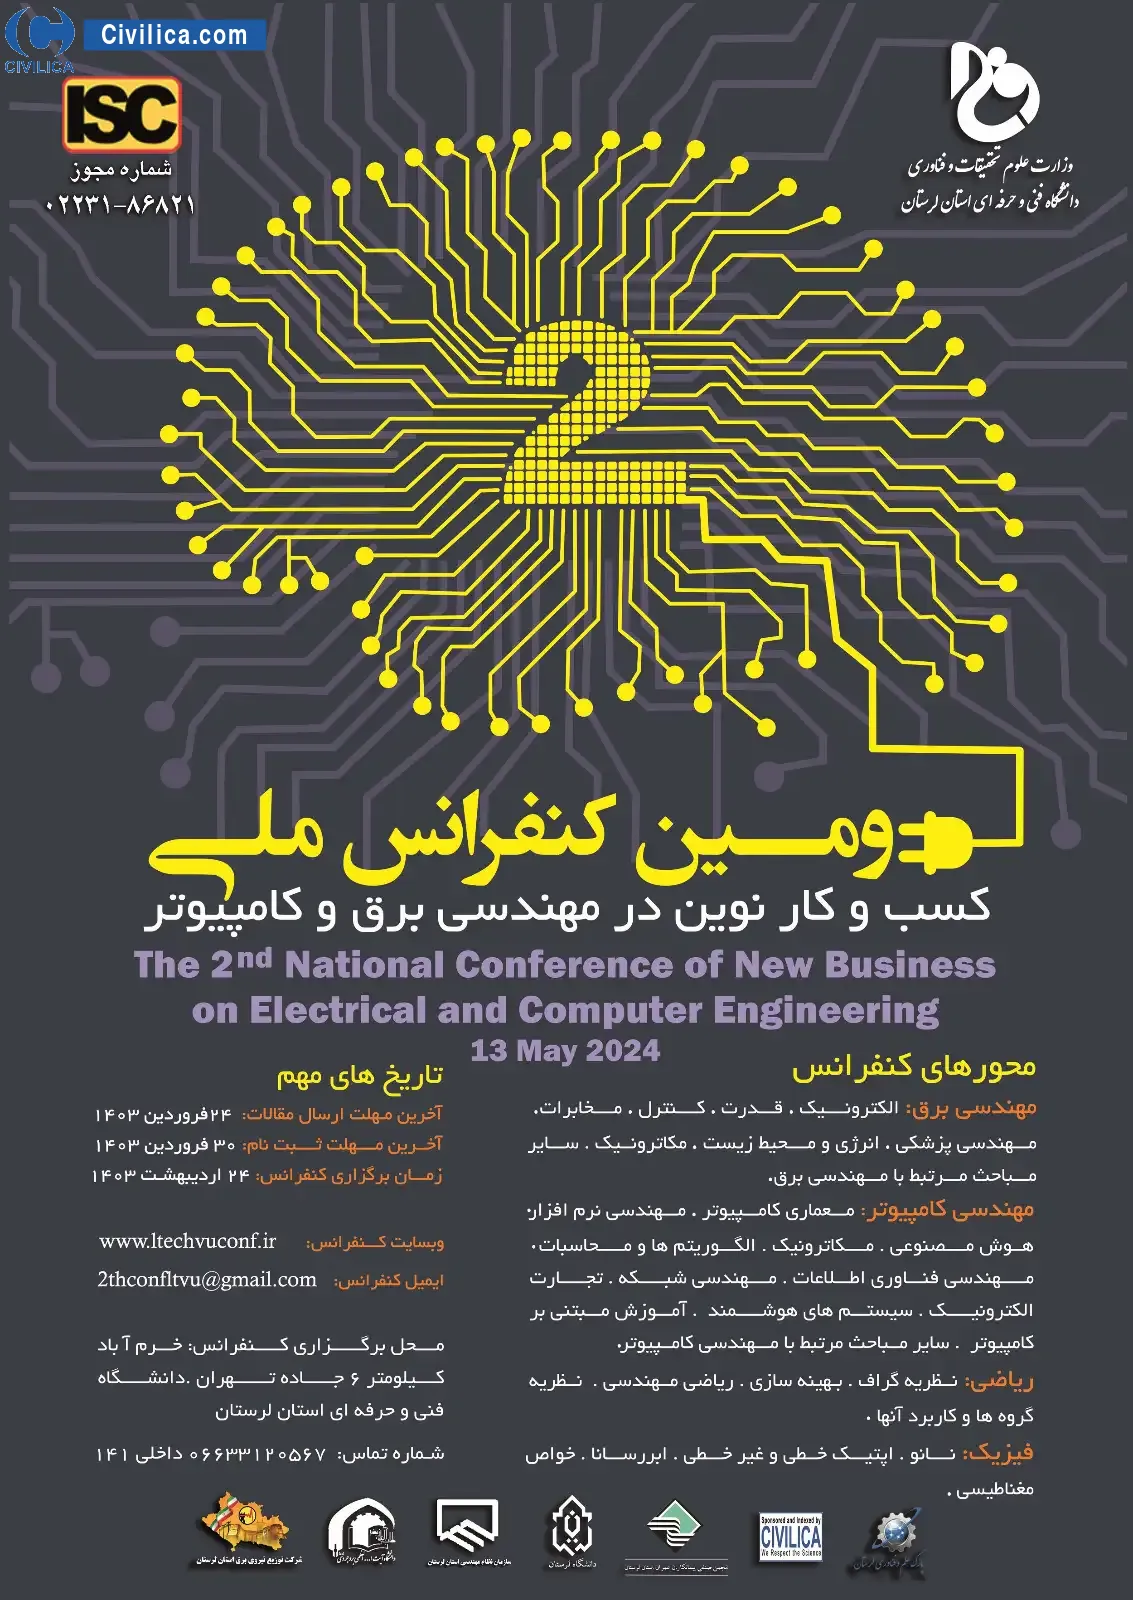 دومین کنفرانس ملی کسب و کار نوین در مهندسی برق و کامپیوتر